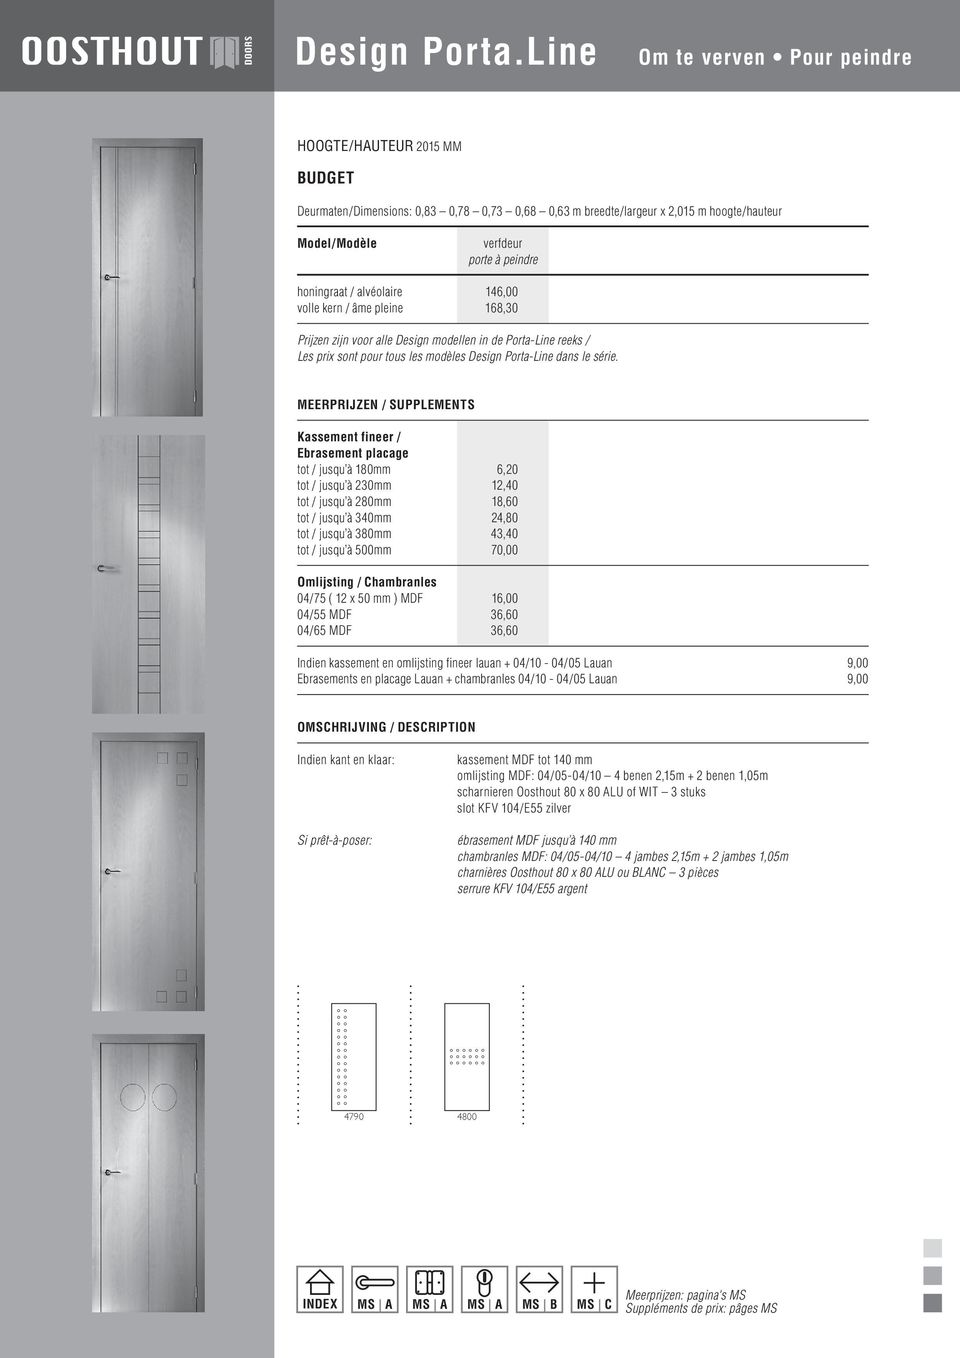 / alvéolaire 146,00 volle kern / âme pleine 168,30 Prijzen zijn voor alle Design modellen in de Porta-Line reeks / Les prix sont pour tous les modèles Design Porta-Line dans le série.